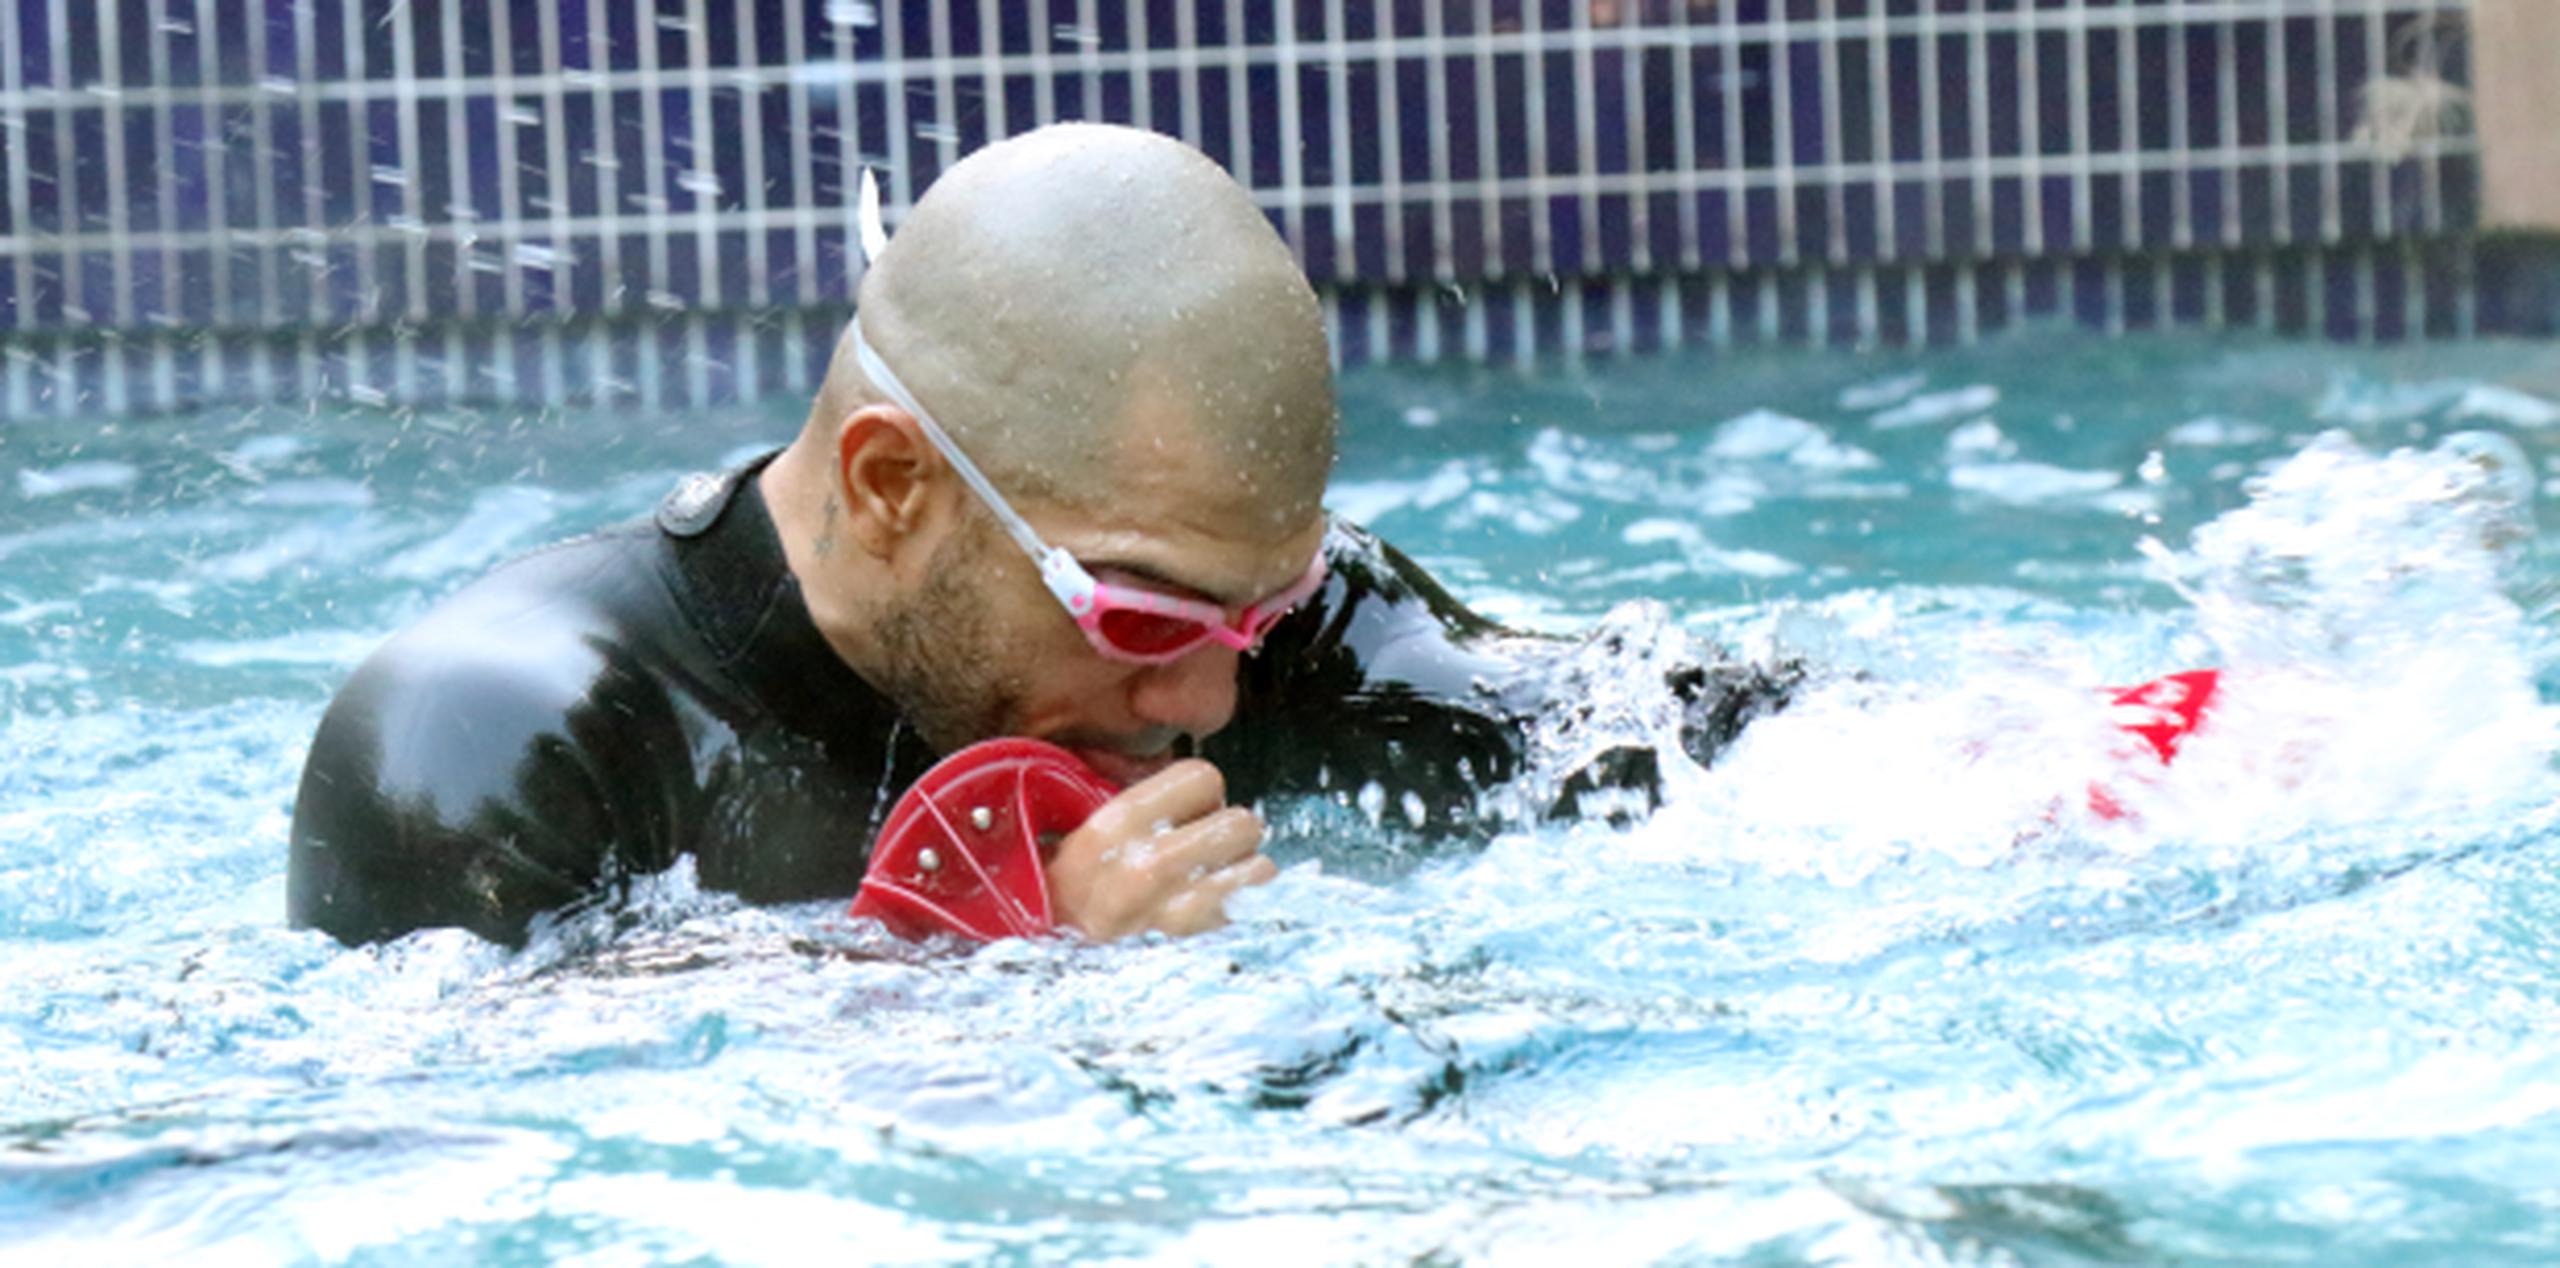 Como parte de su rutina de preparación, Miguel Cotto hace ejercicios en una piscina usando unos aditamentos especiales. (Suministrada / MCP)